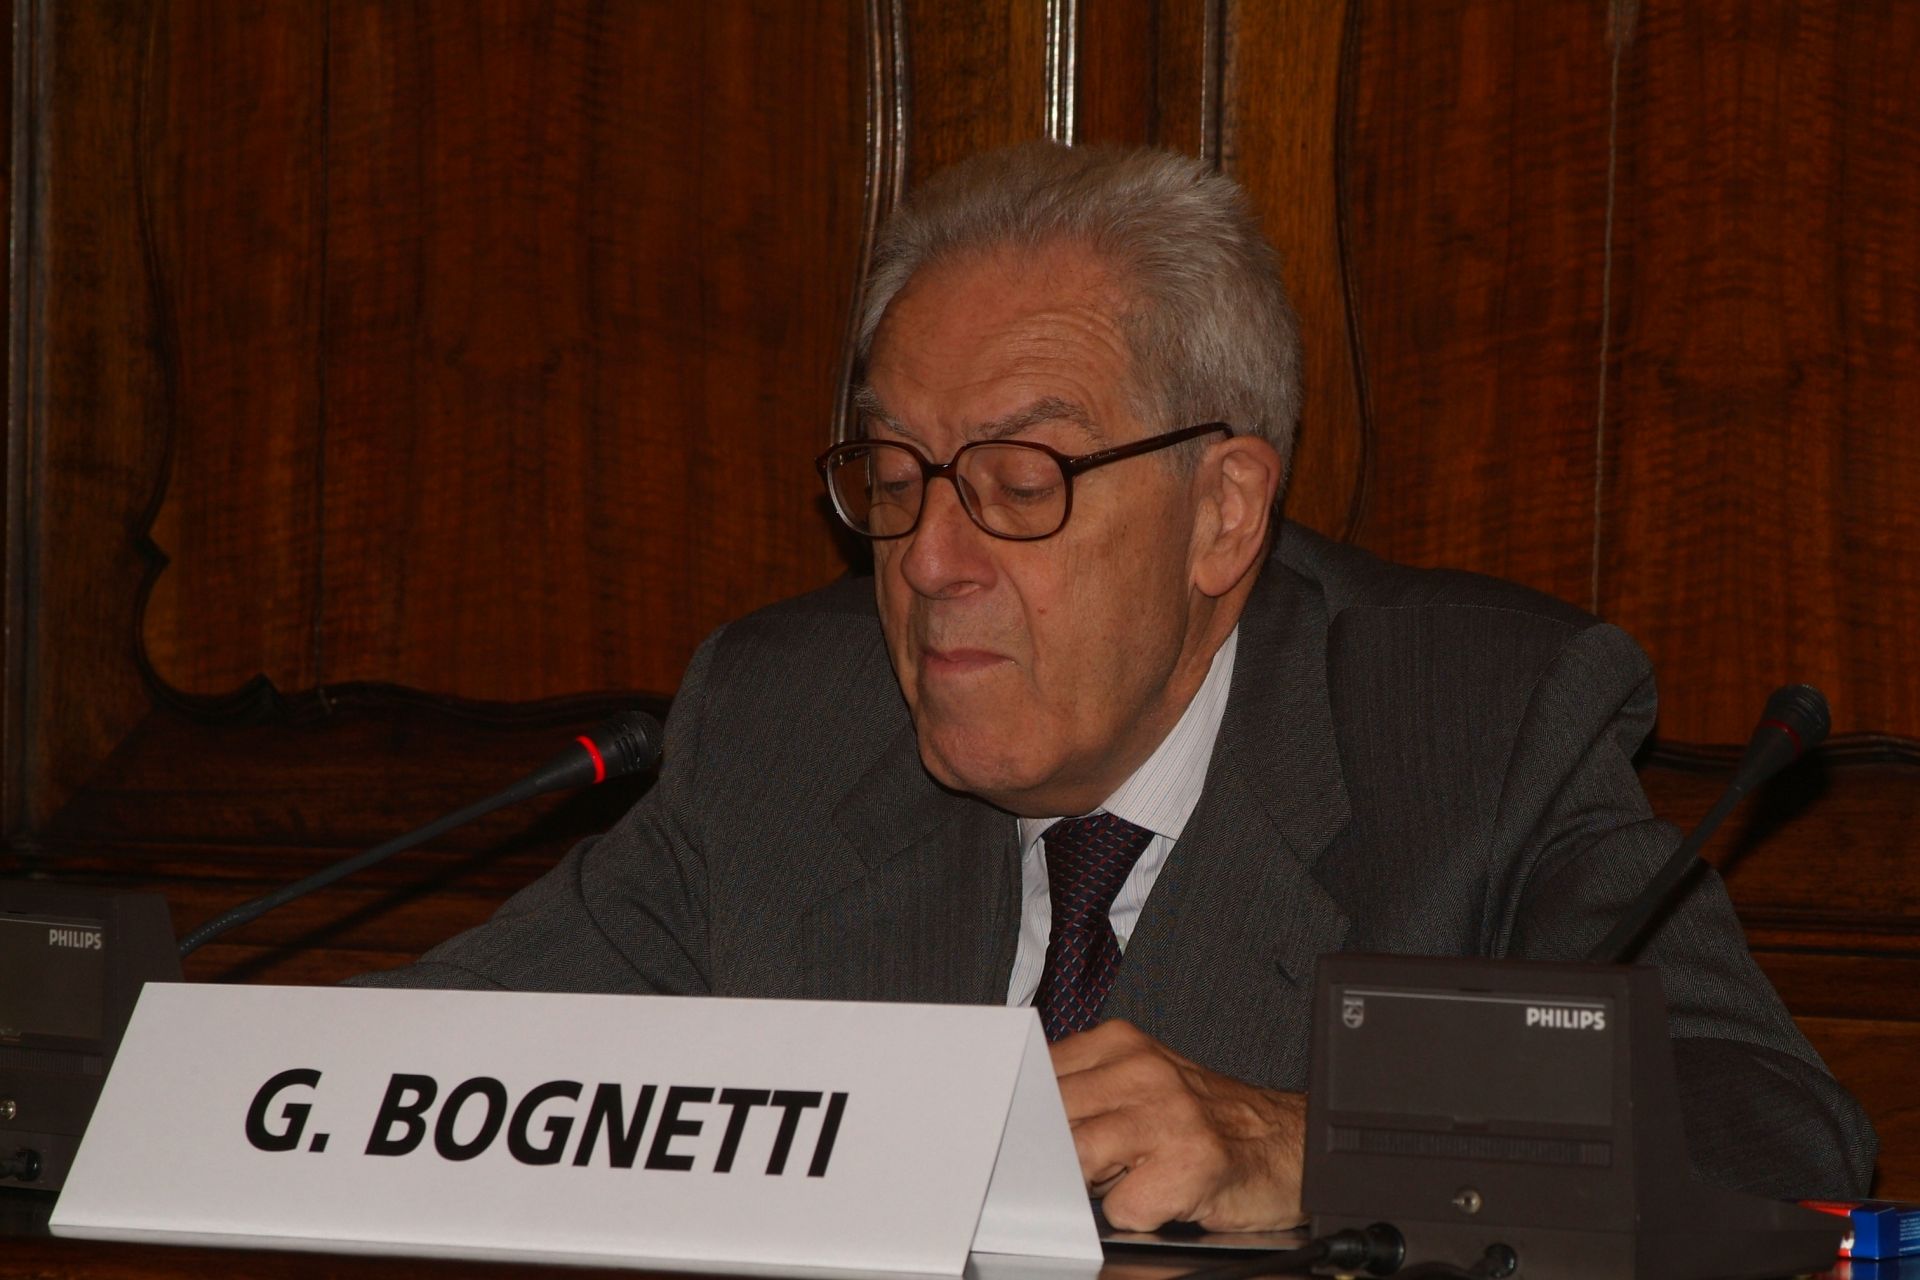 Giovanni Bognetti